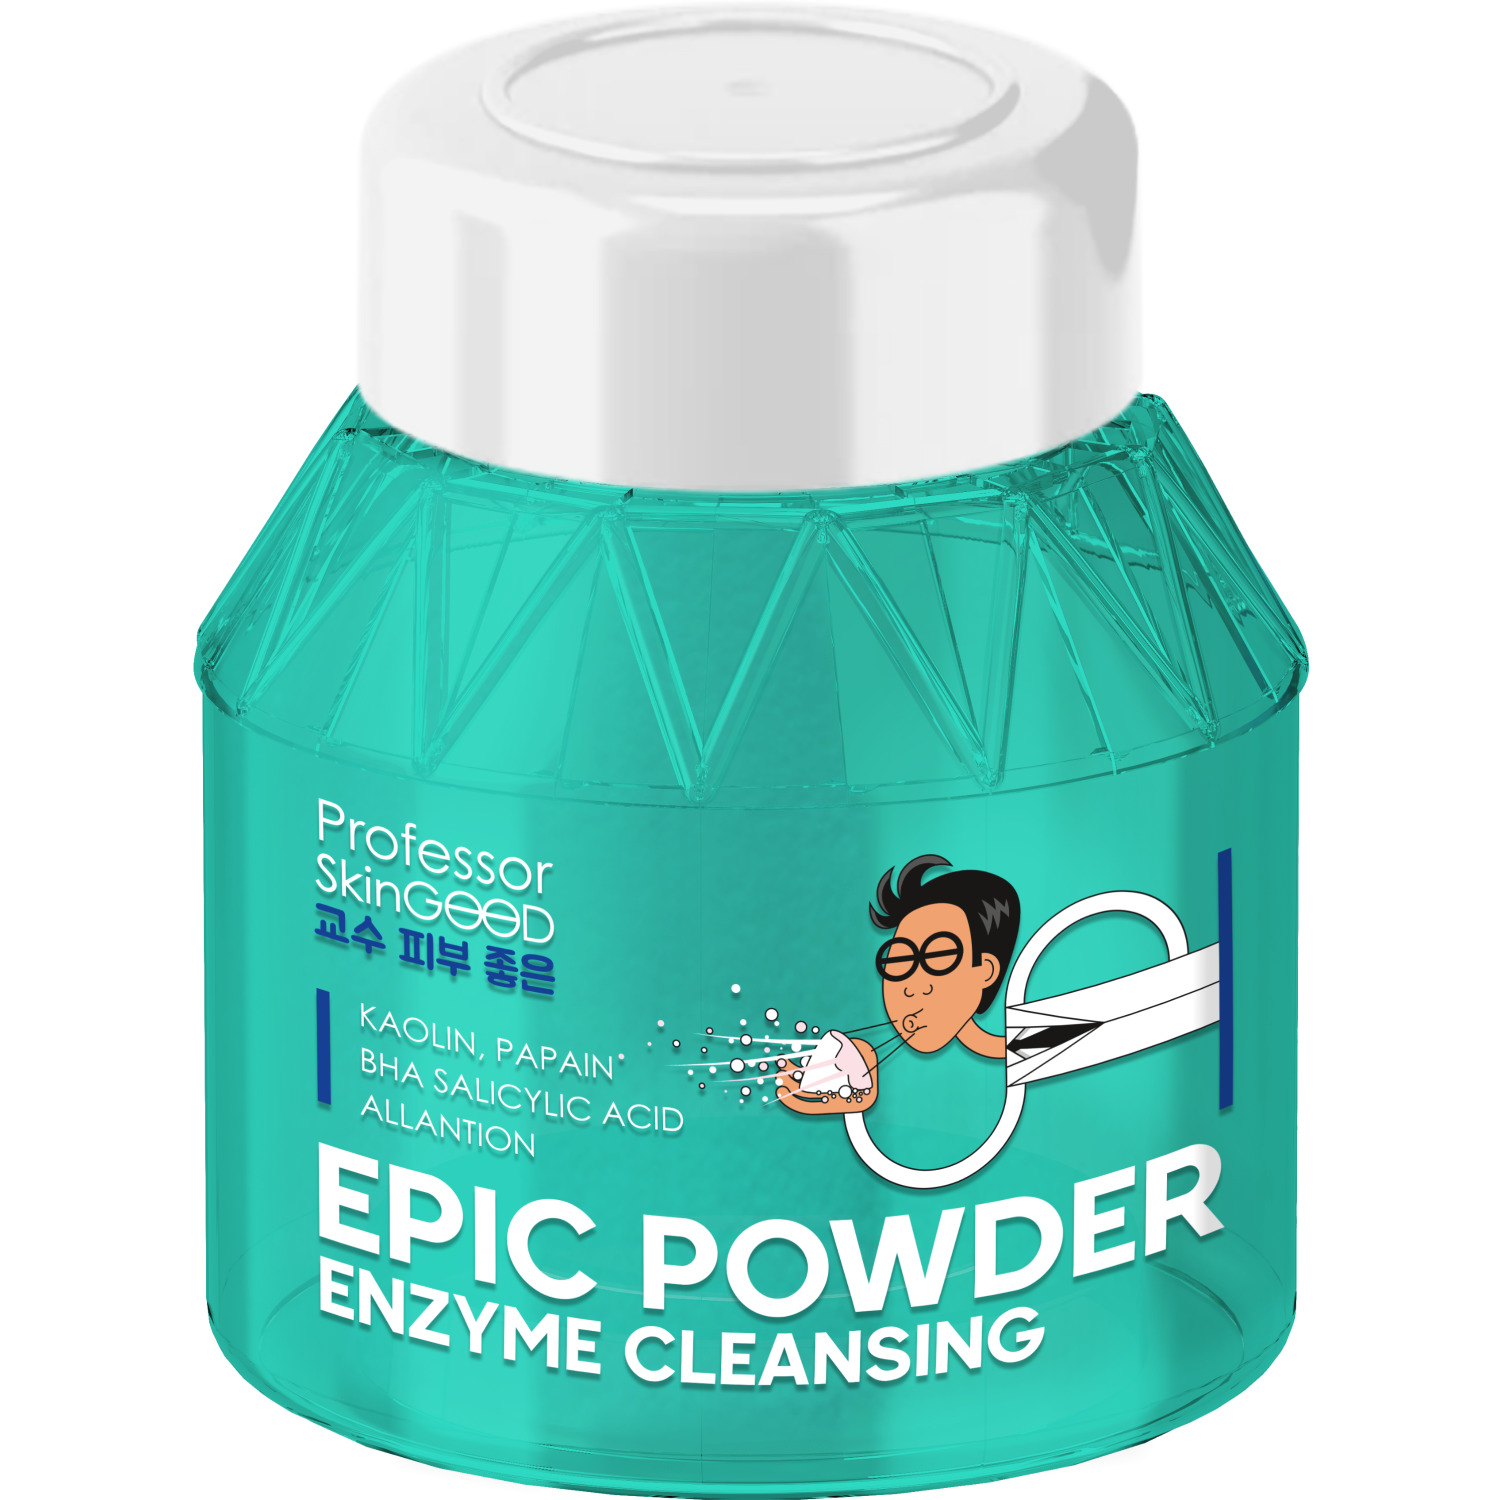 Professor SkinGOOD Энзимная пудра с каолином и папаином для умываниям Epic Powder Enzyme Cleansing, 66 г (Professor SkinGOOD, Умывание и очищение)